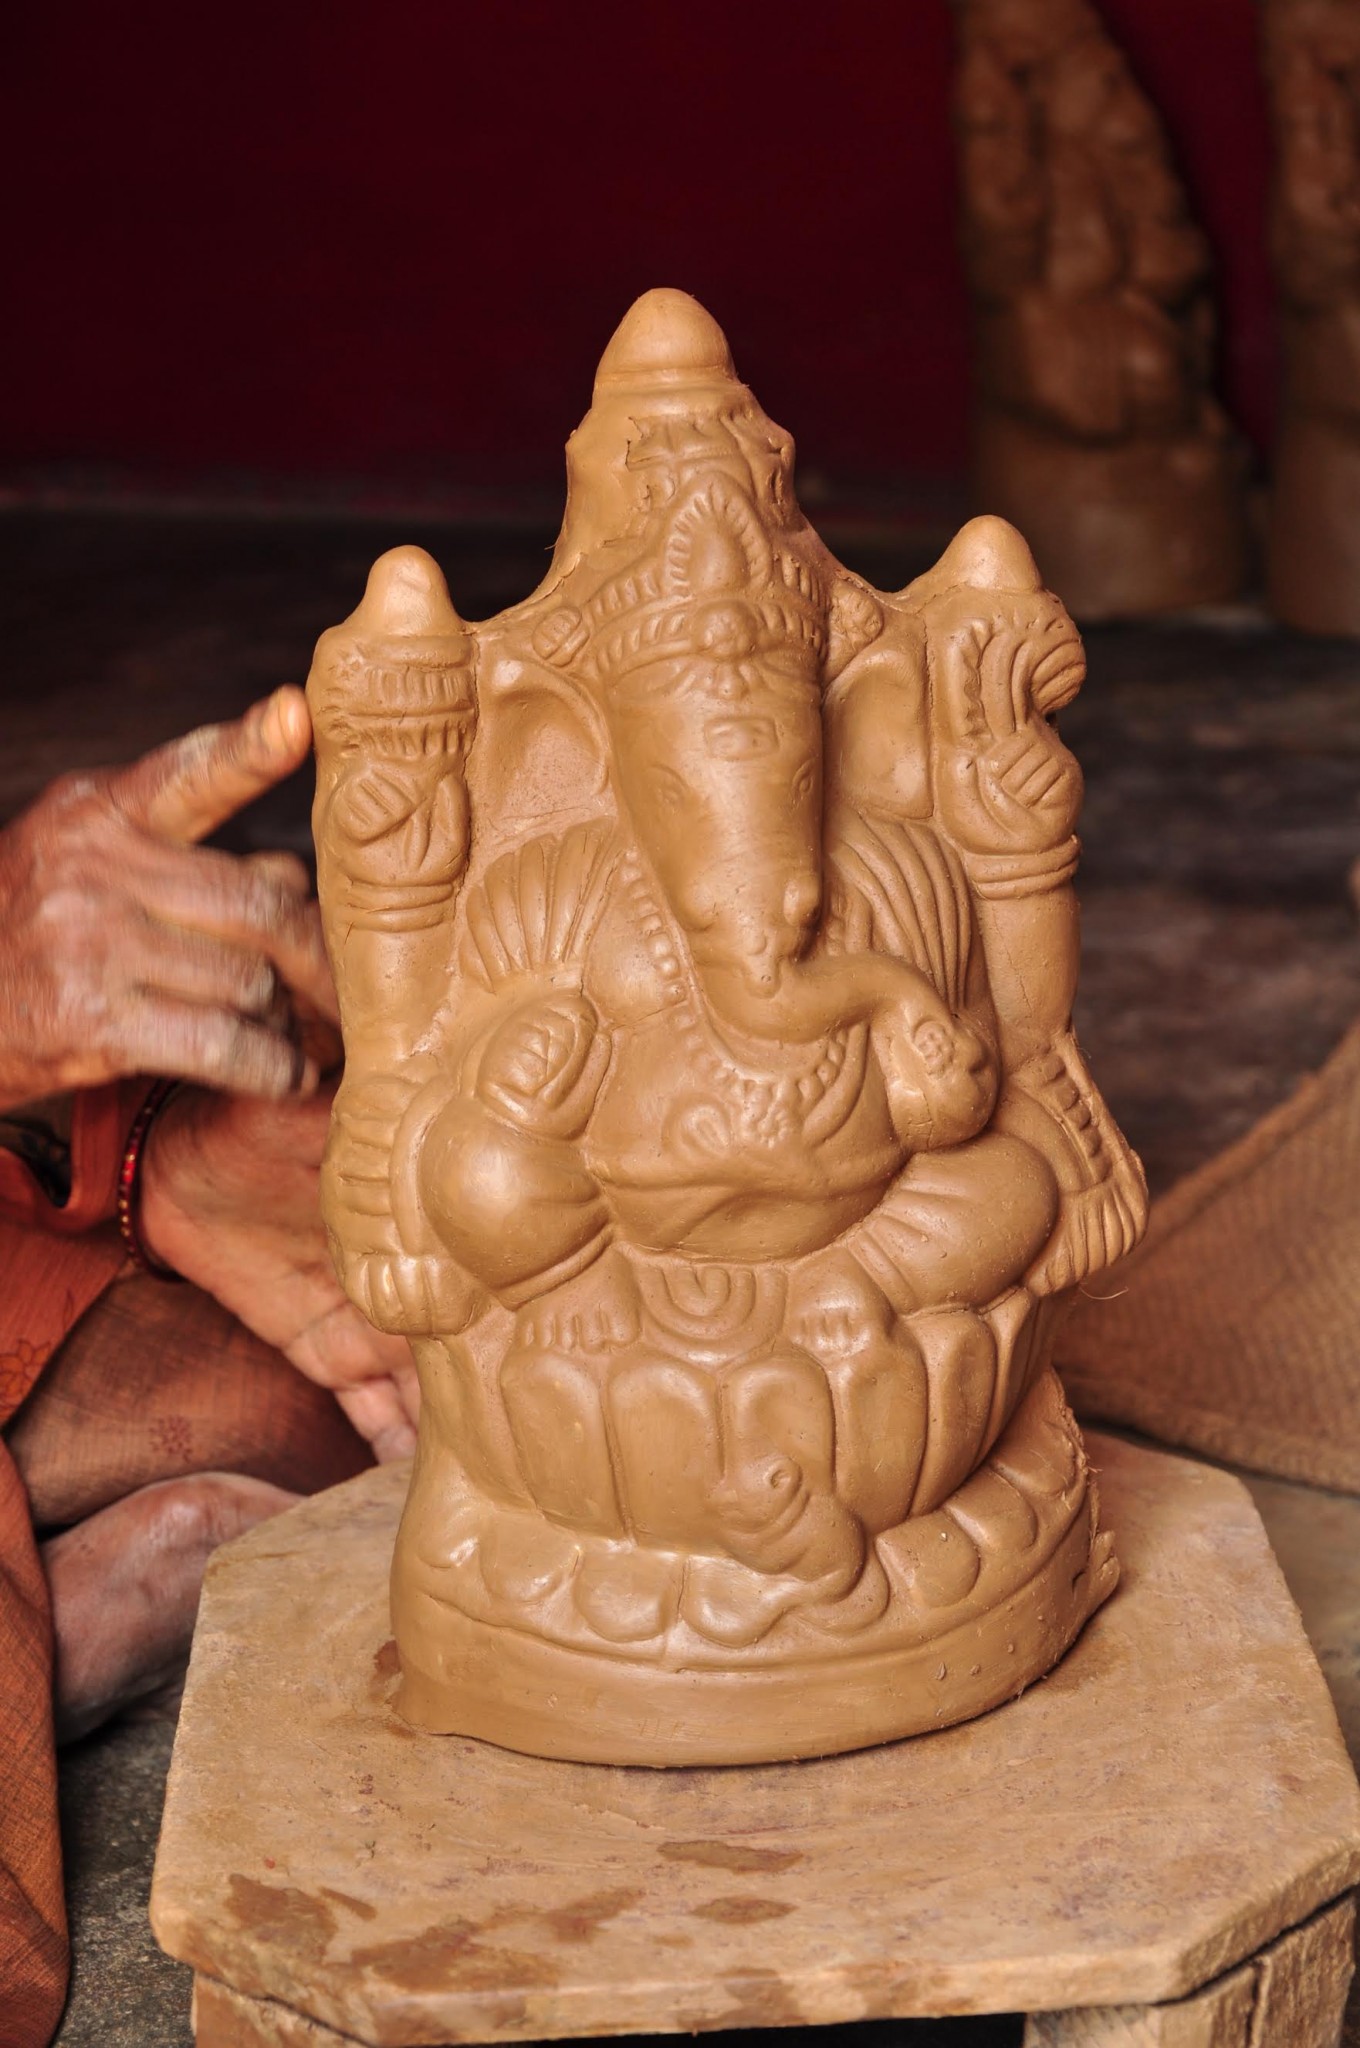 Mrit shilpi  pratima shilpi clay idol artist Biswanath Paul in Ghola